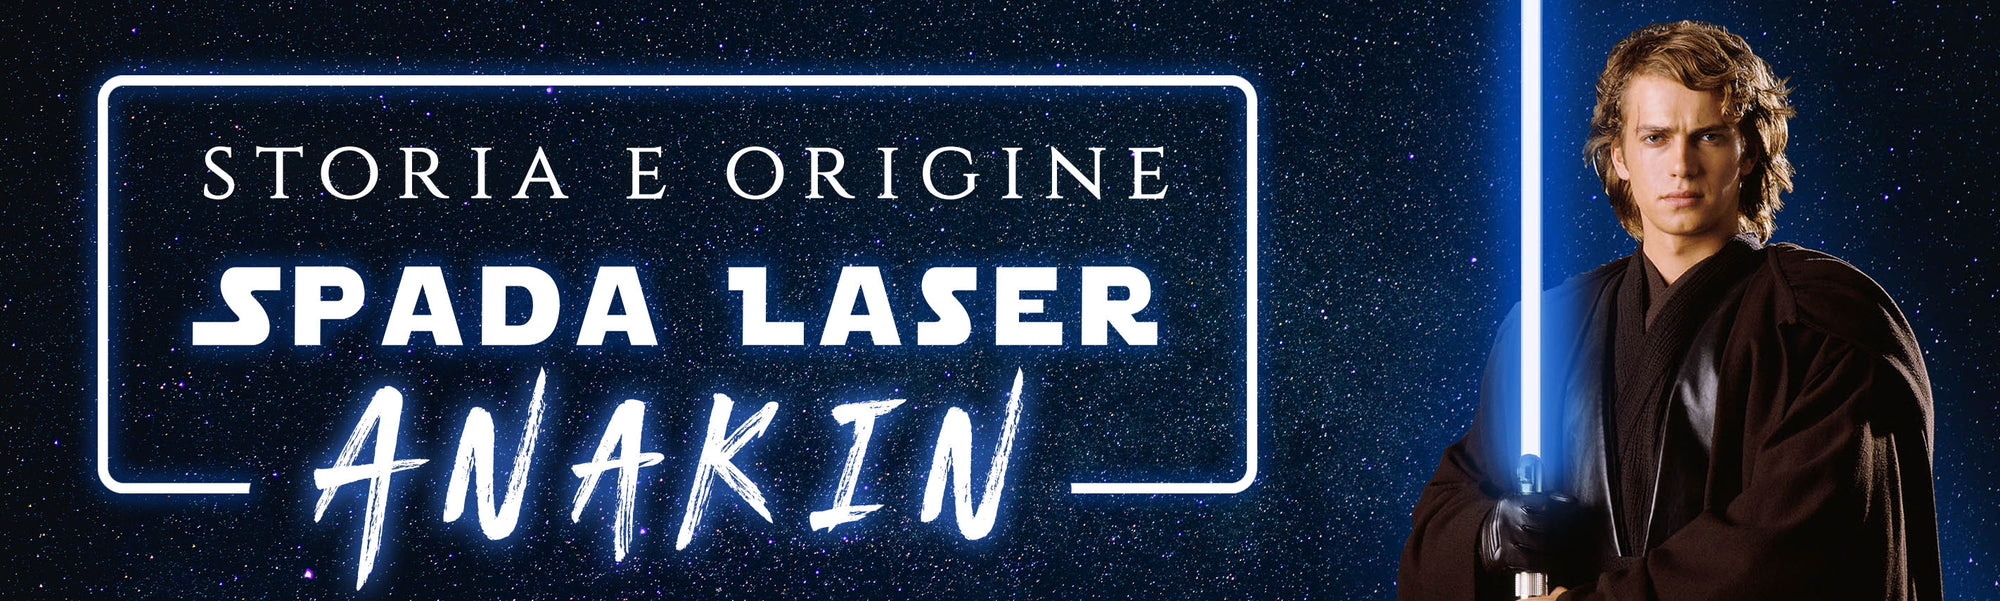 Spada Laser di Anakin Skywalker